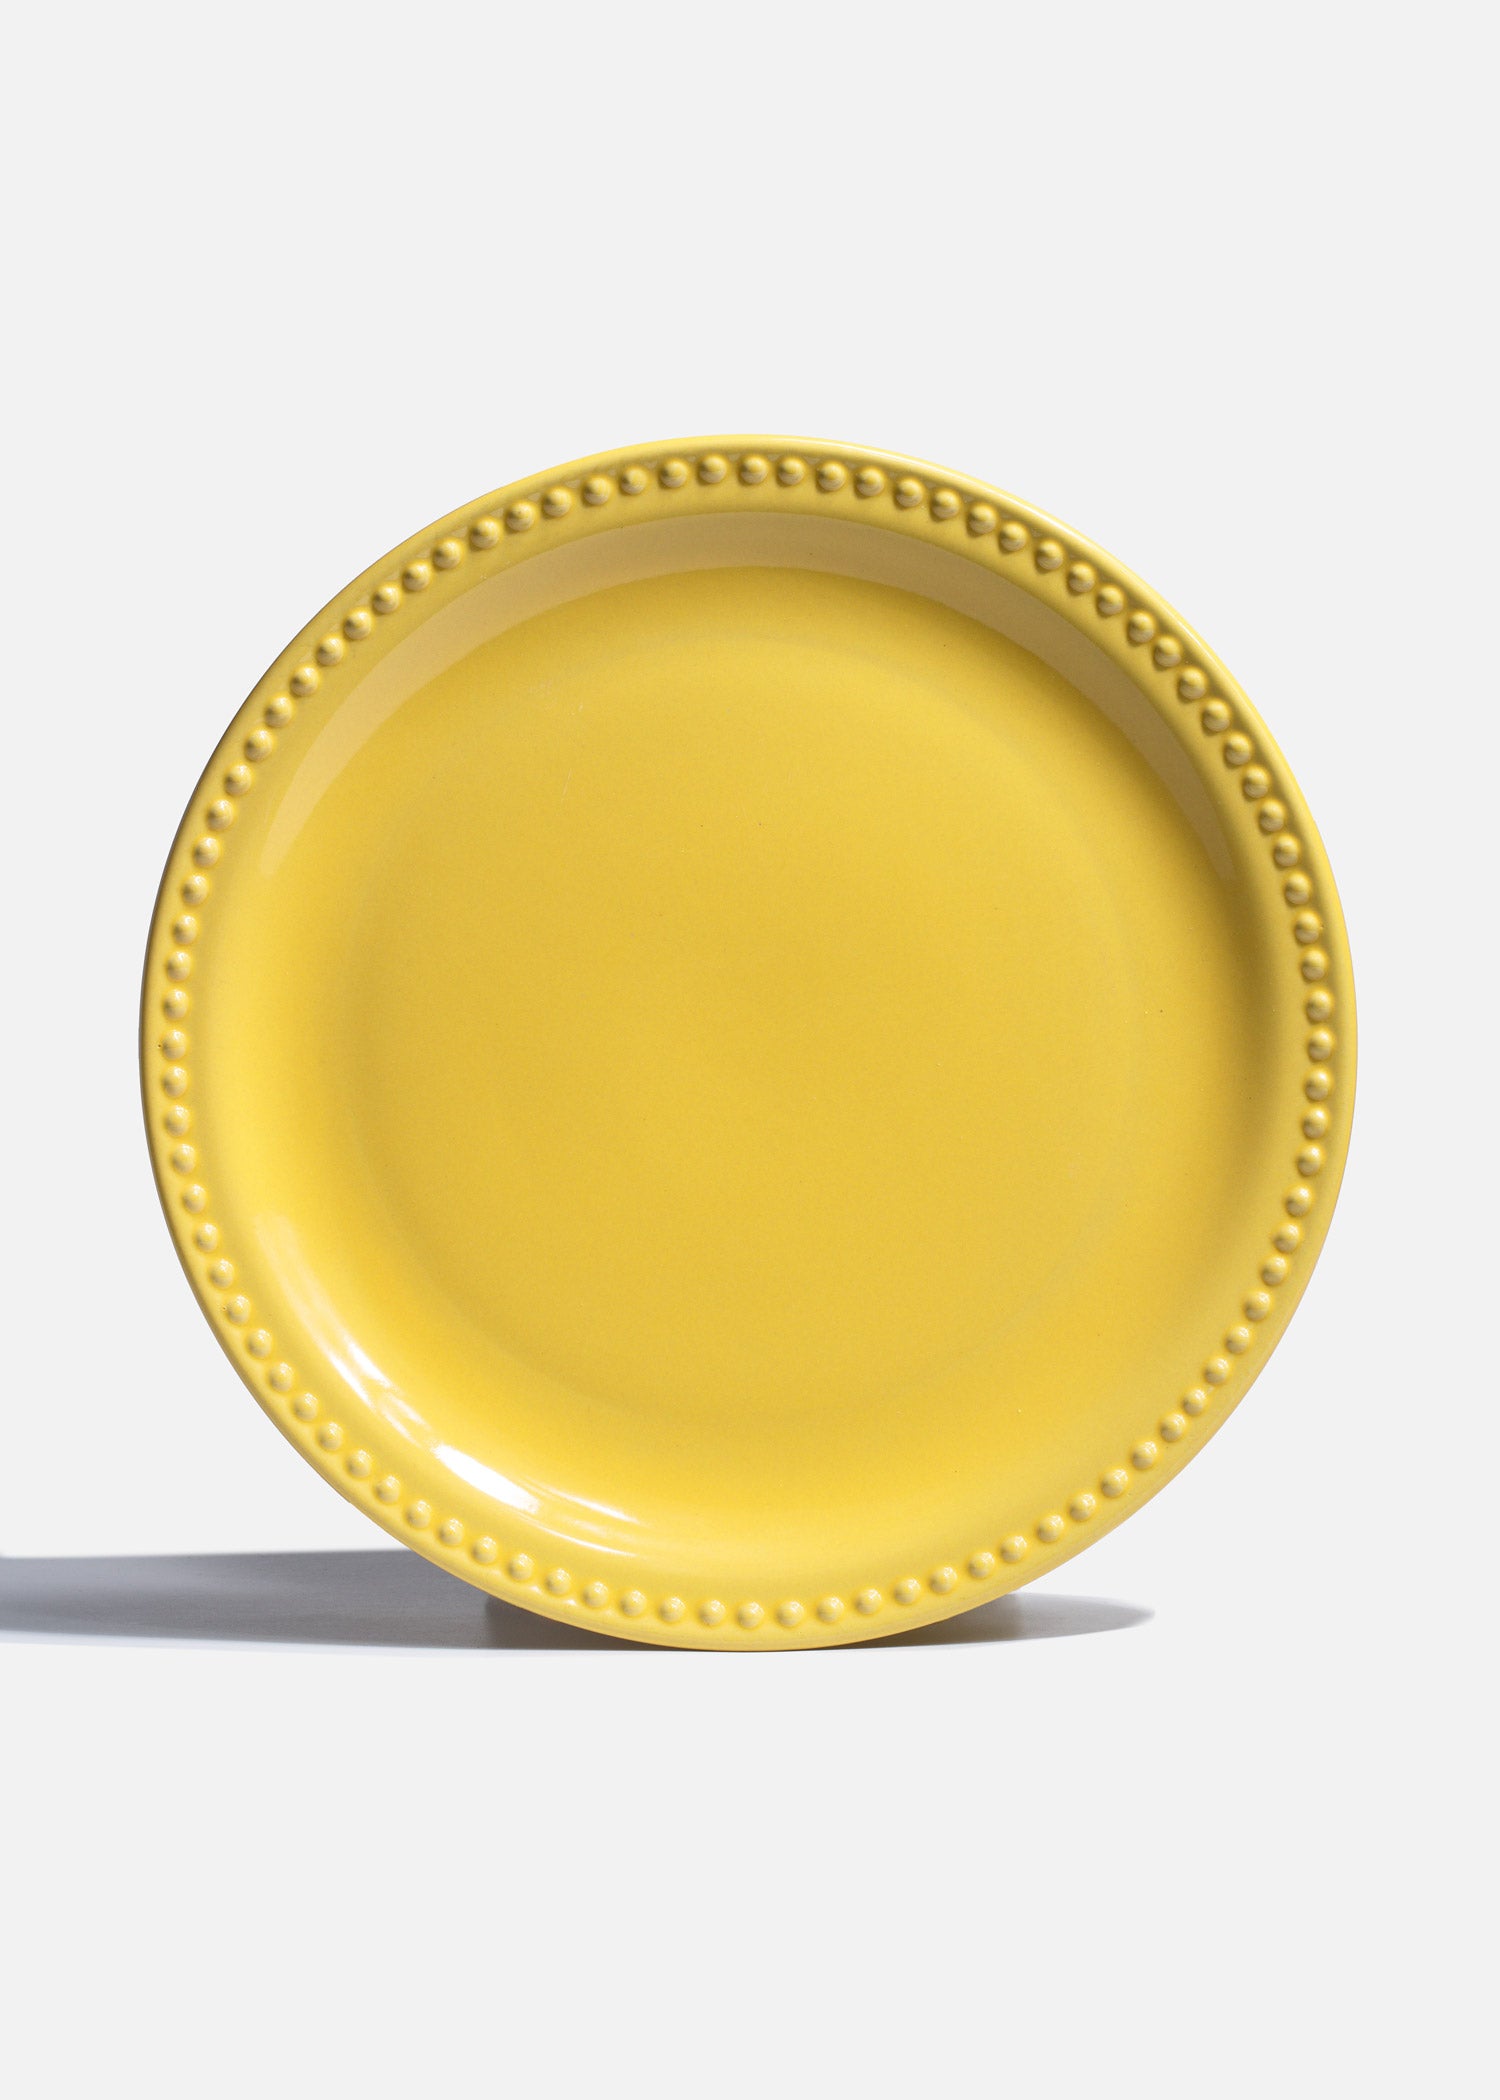 precio platos amarillos ceramica maha